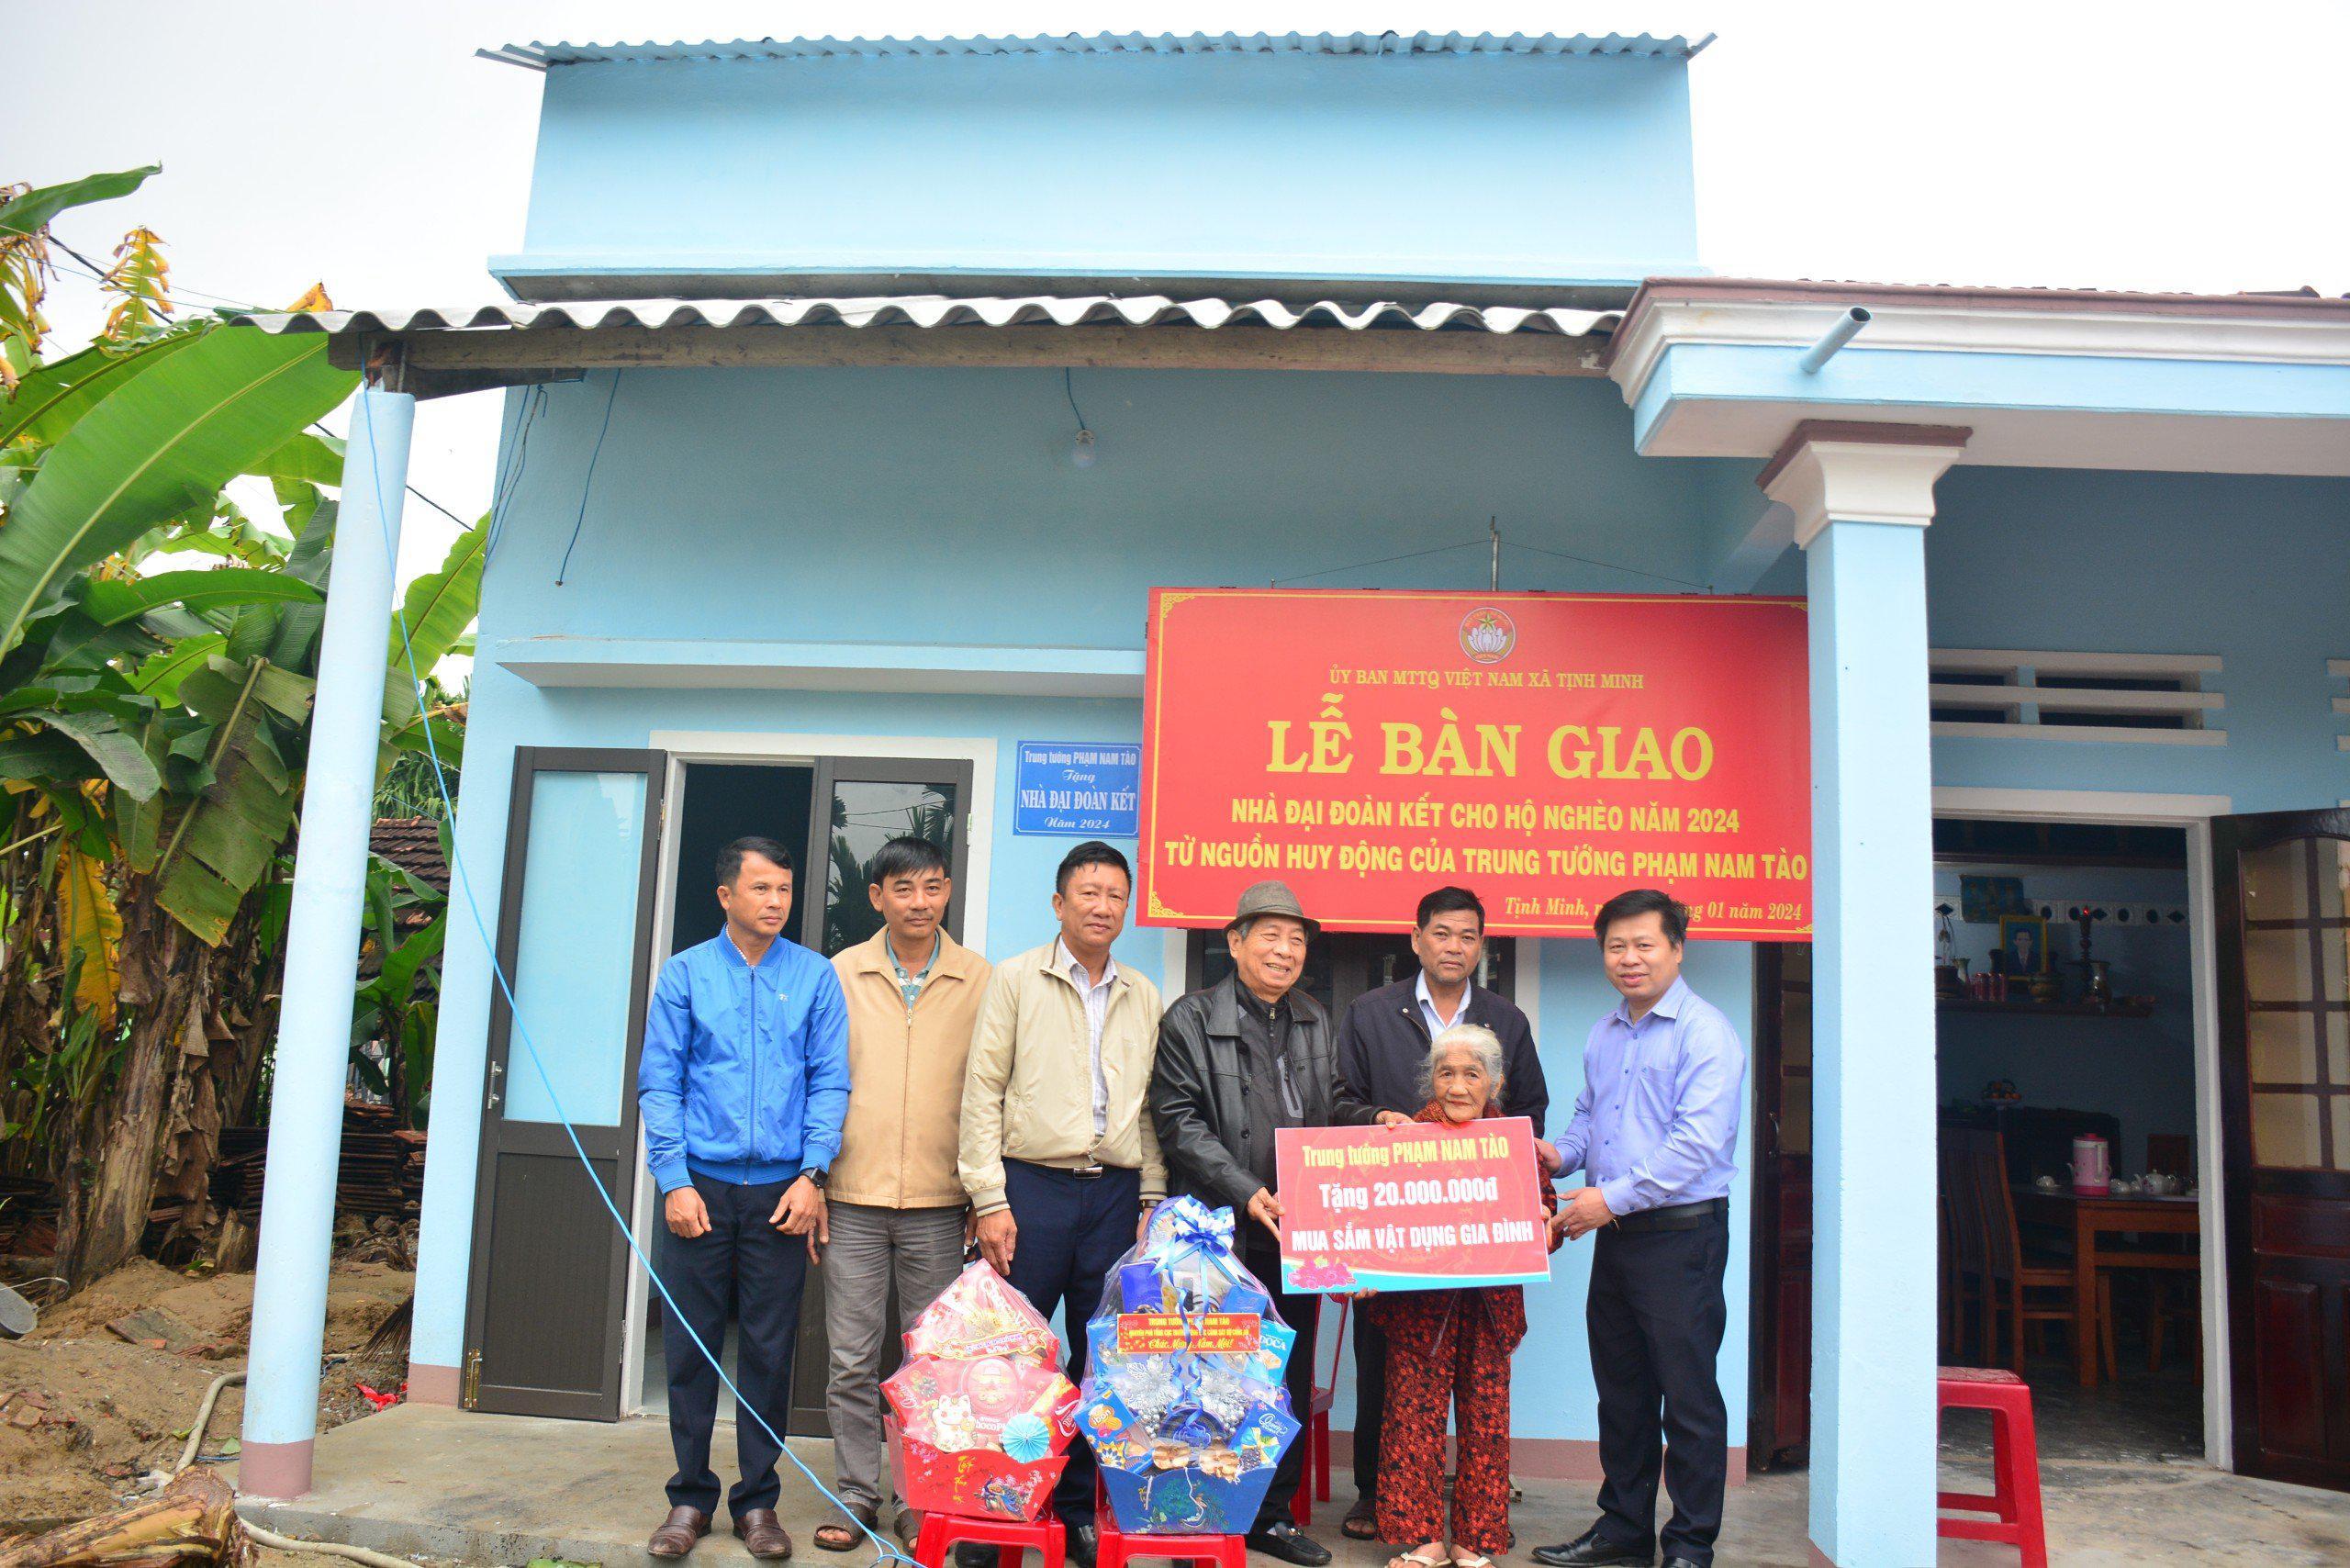 Trung tướng Phạm Nam Tào trao tặng Nhà Đại đoàn kết cho 02 hộ nghèo tại huyện Sơn Tịnh